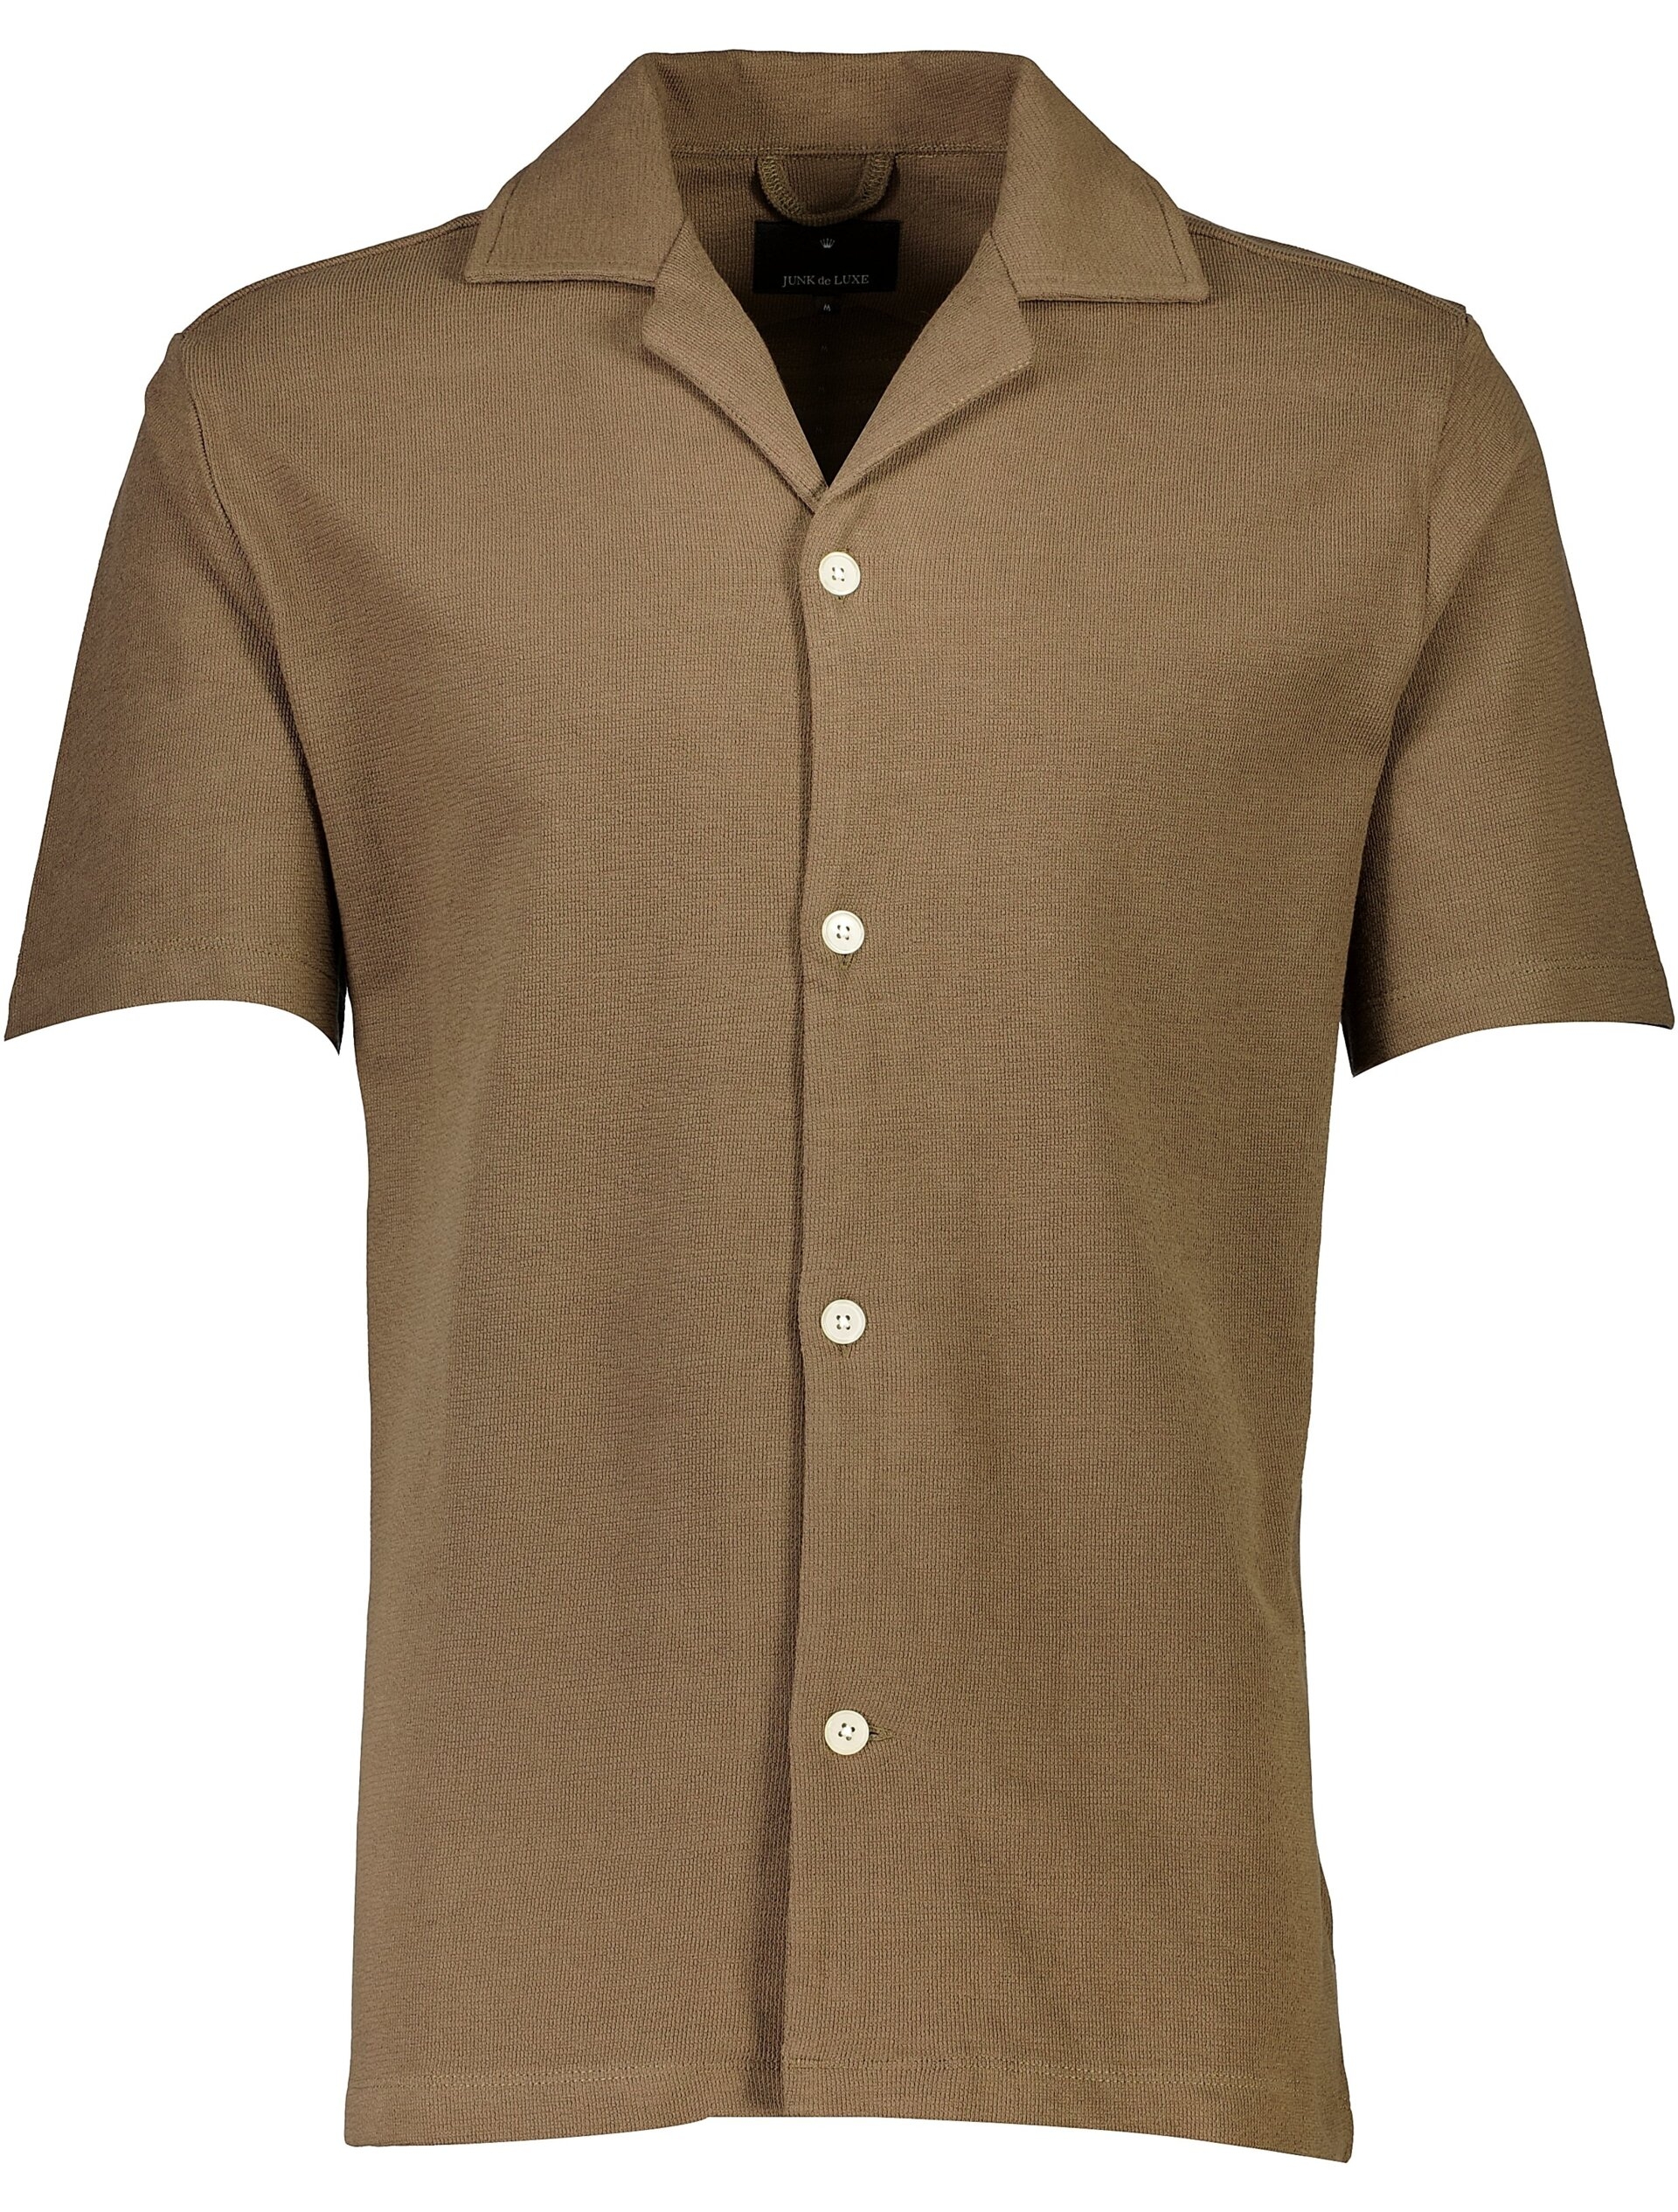 Junk de Luxe Casual shirt brown / mid brown